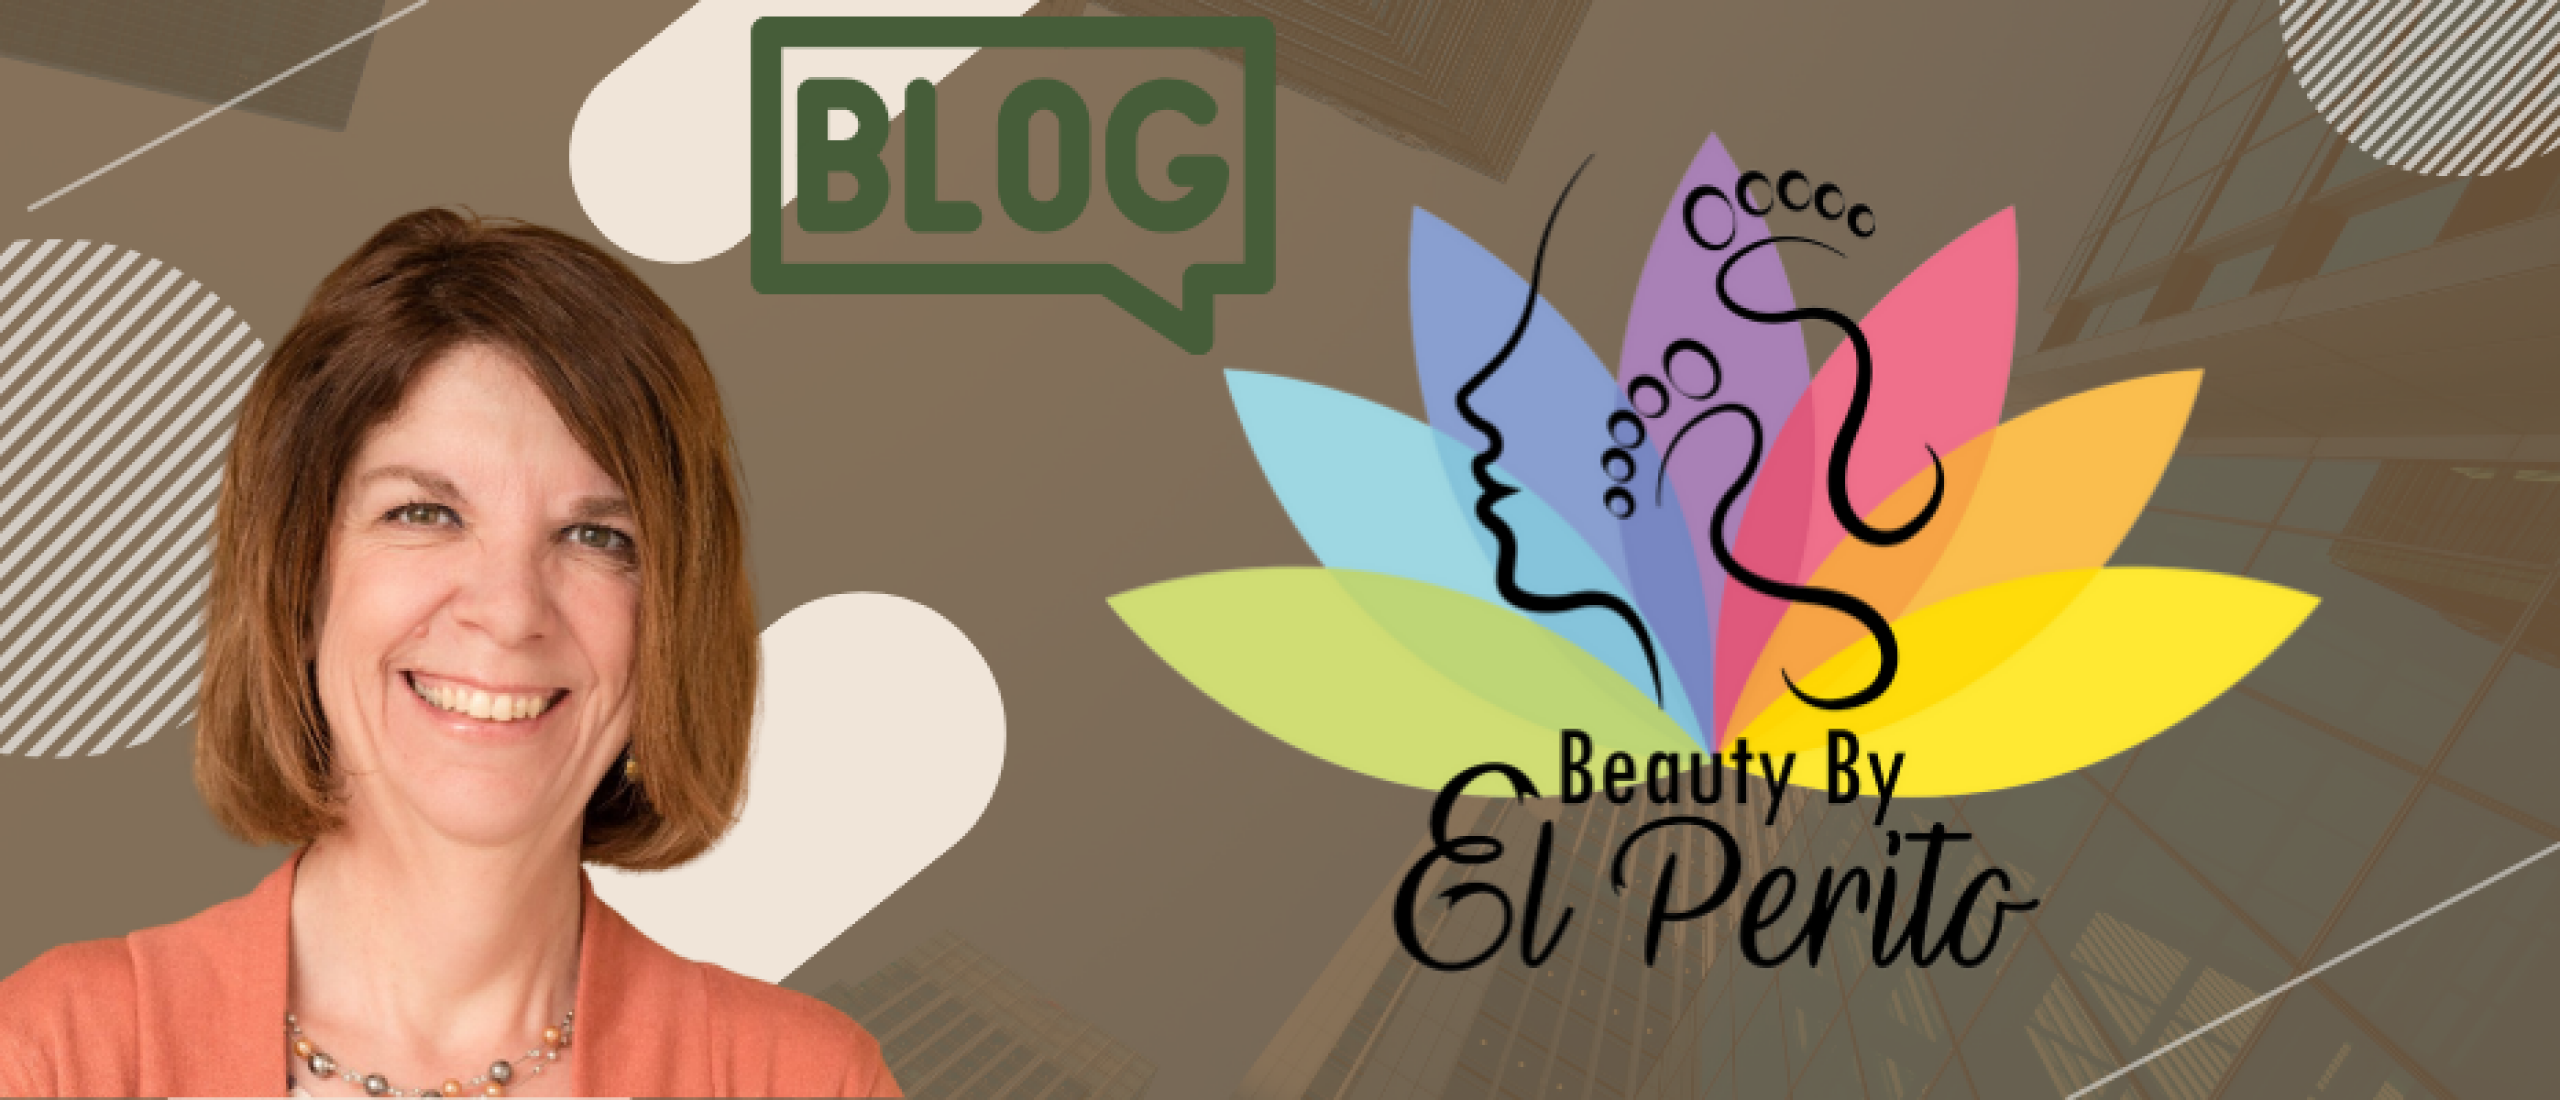 Yvonne Verberne en haar praktijk Beauty By El Perito